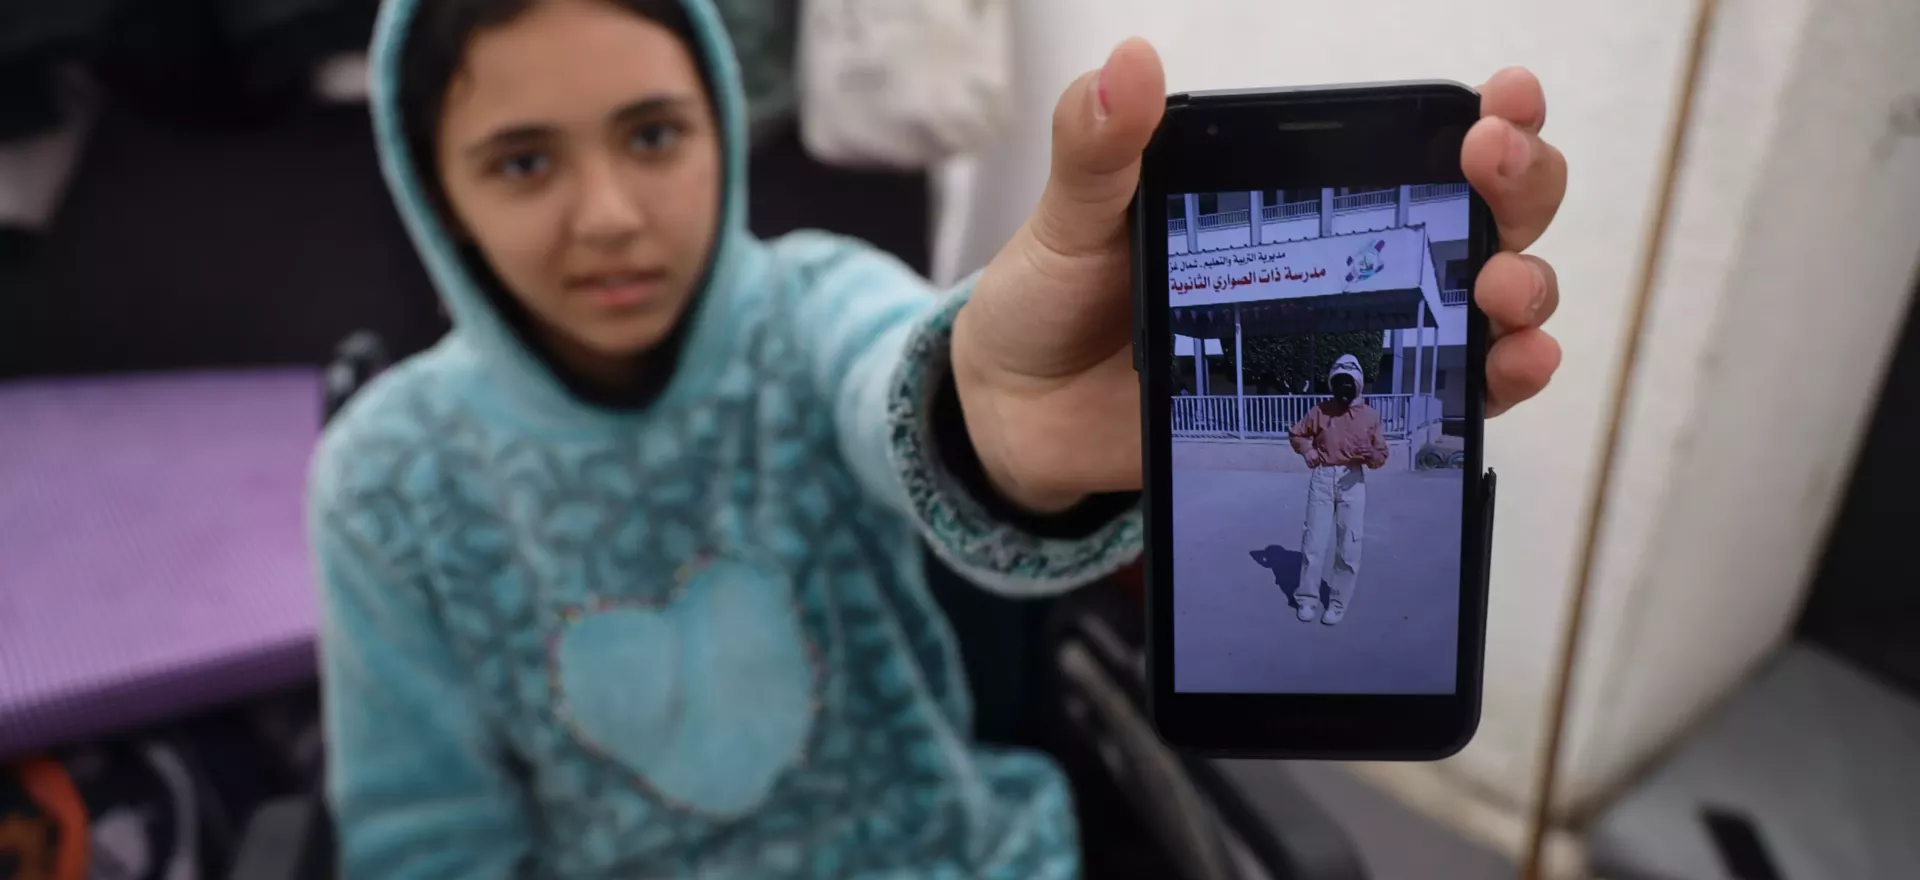 Une jeune fille assise dans un fauteuil roulant tient son téléphone portable pour montrer une photo d’elle avant sa blessure.